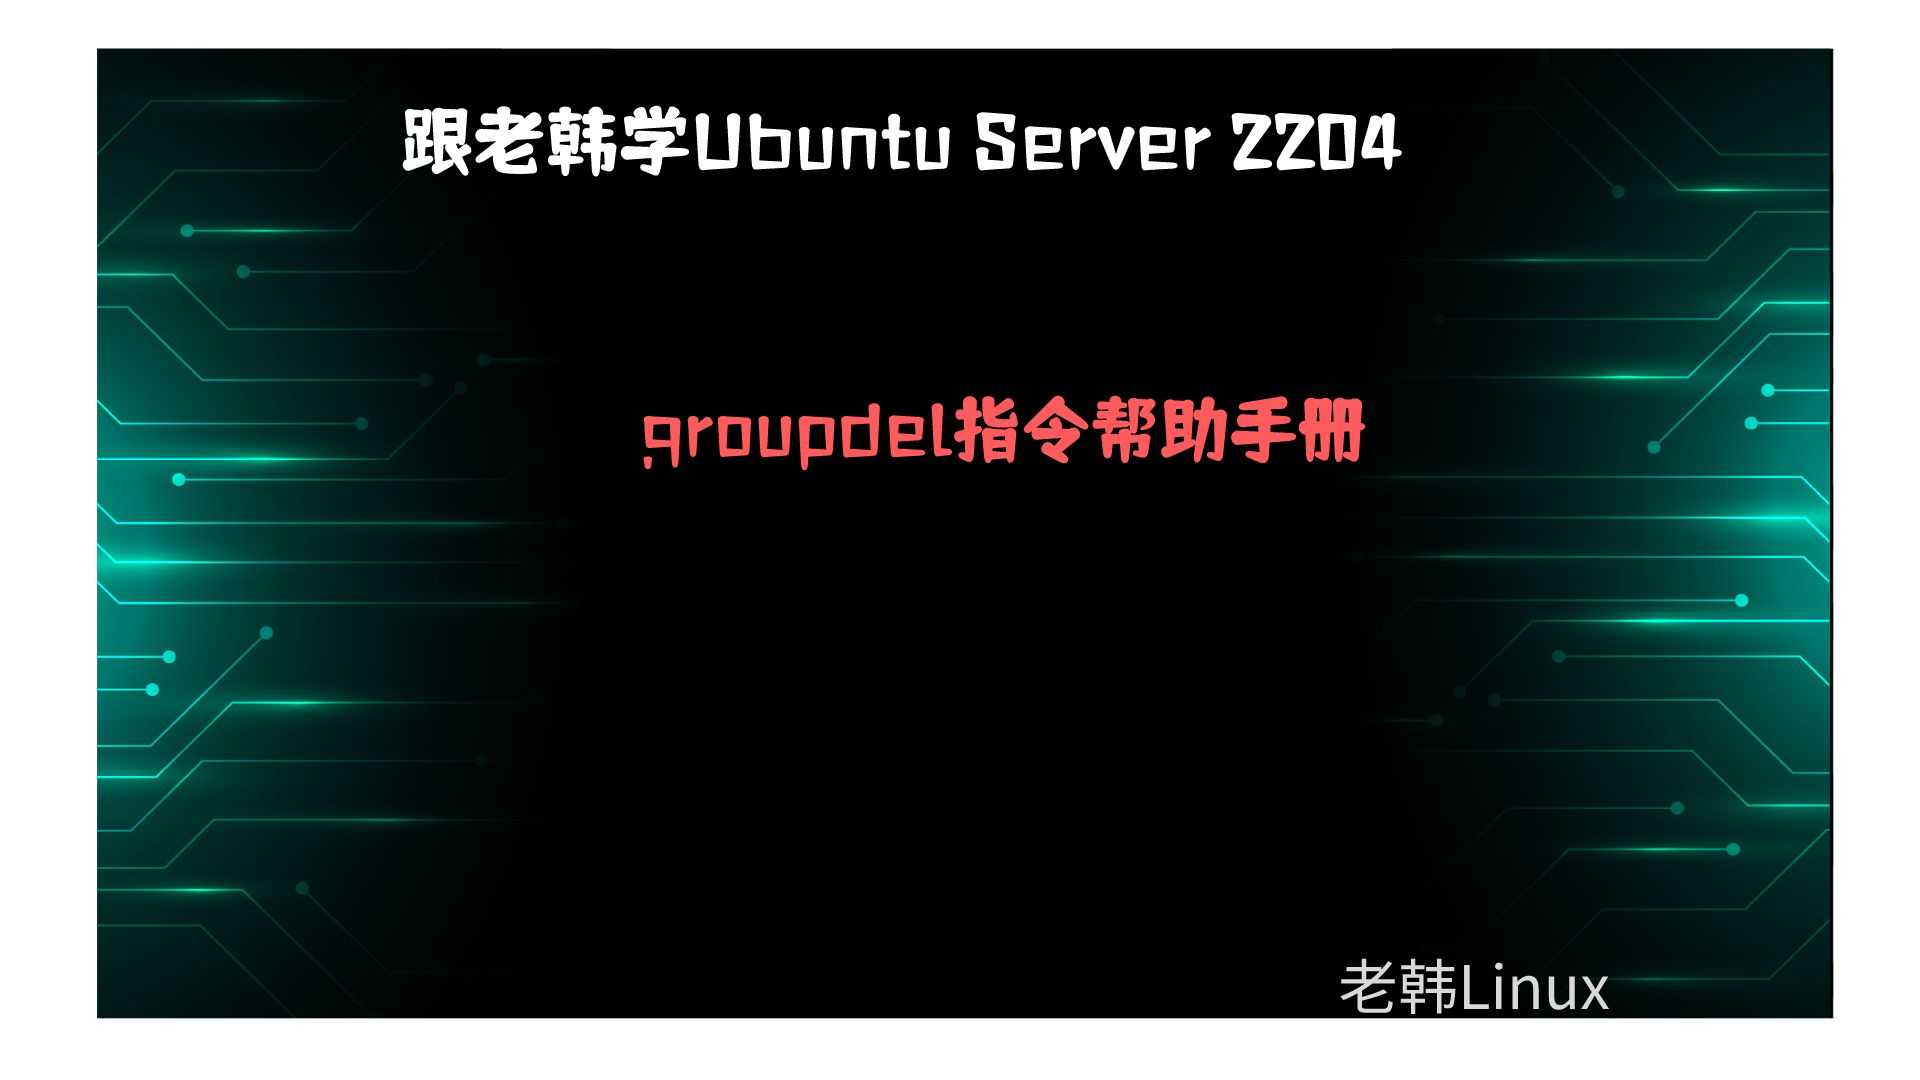 跟老韩学Ubuntu Server 2204-用户组管理-groupdel指令帮助手册